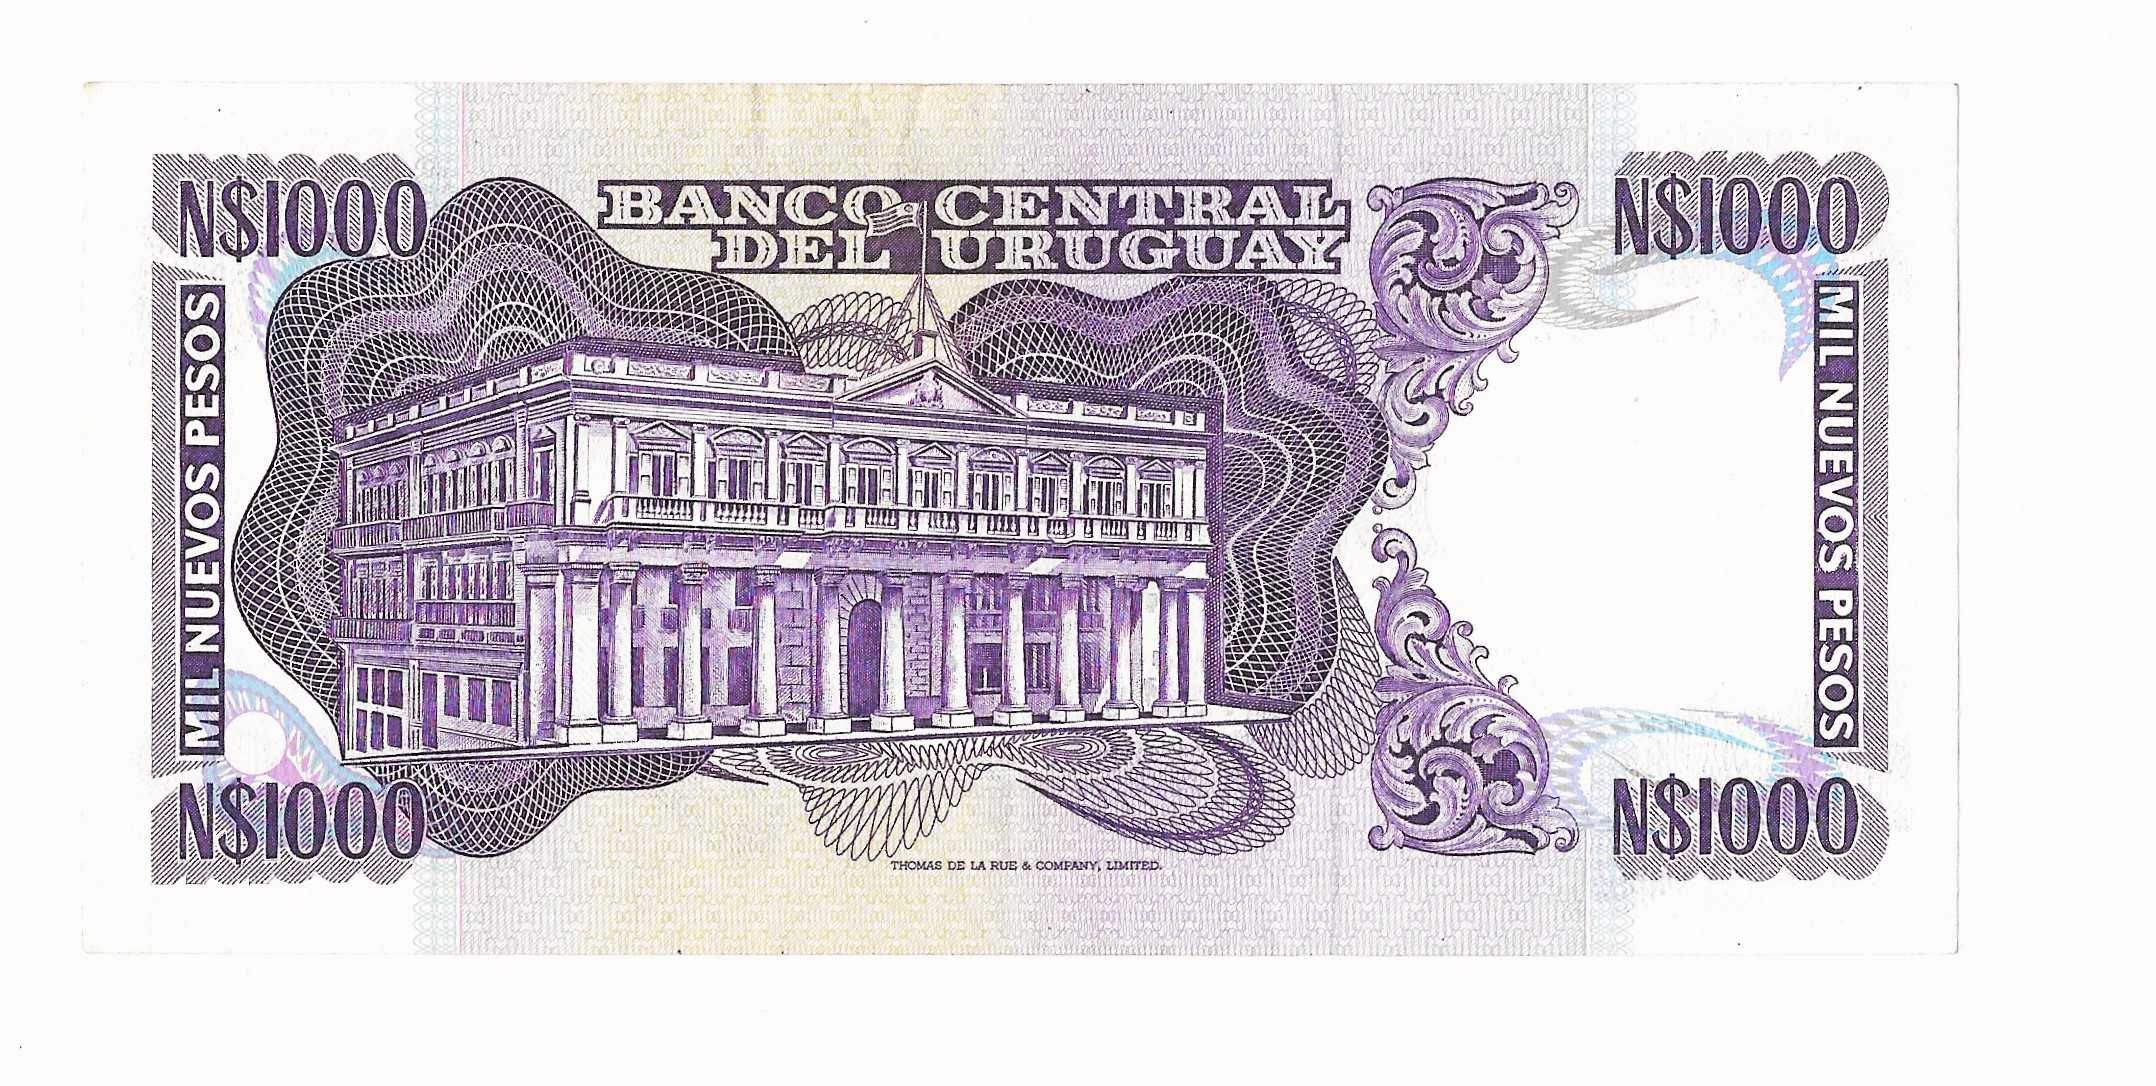 1000 Nuevos Pesos Banco Central Del Uruguay Banknote.